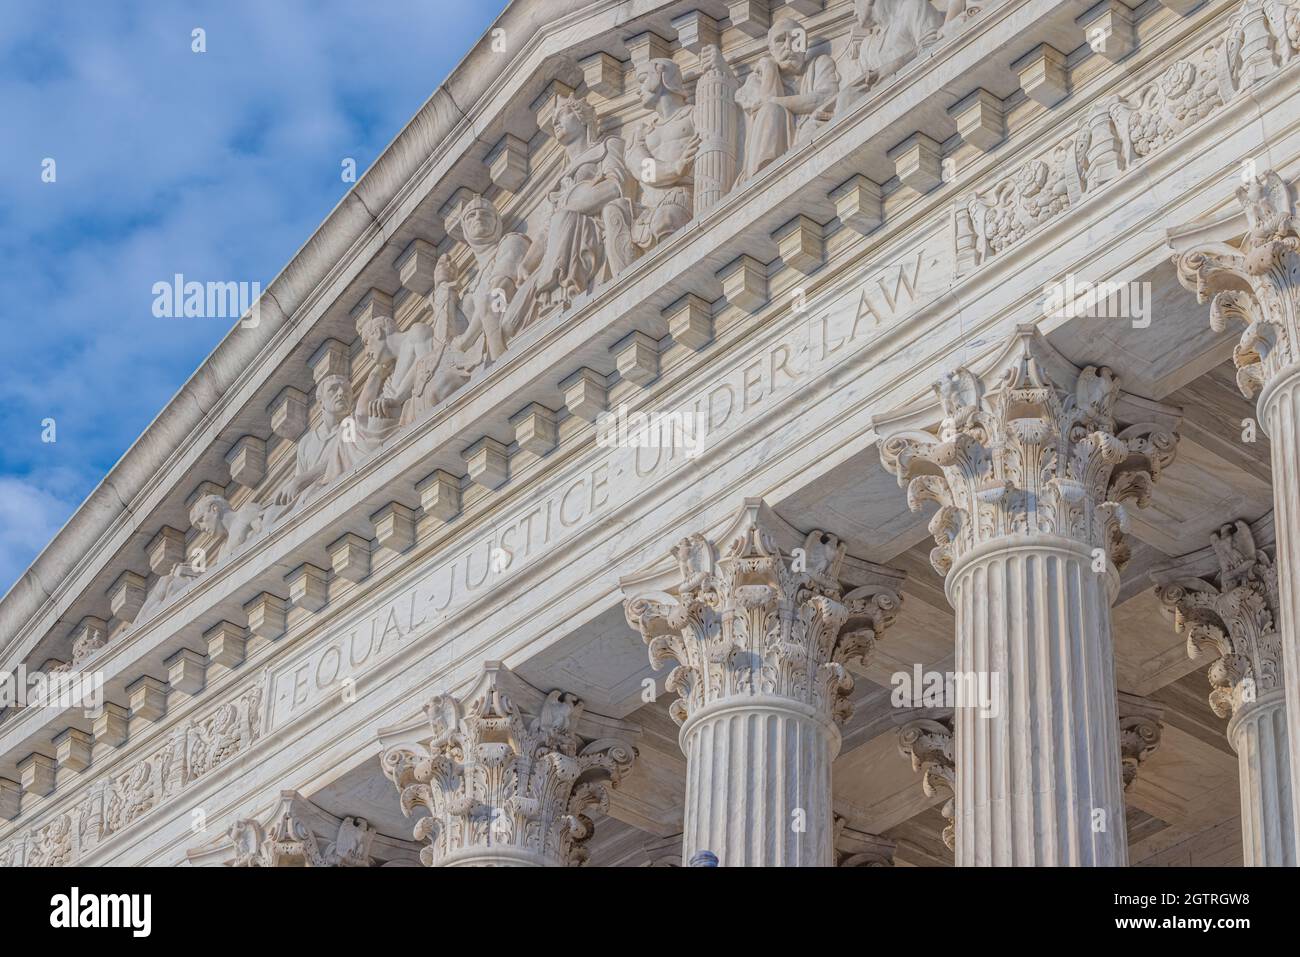 Oberster Gerichtshof der Vereinigten Staaten in Washington DC, USA Stockfoto